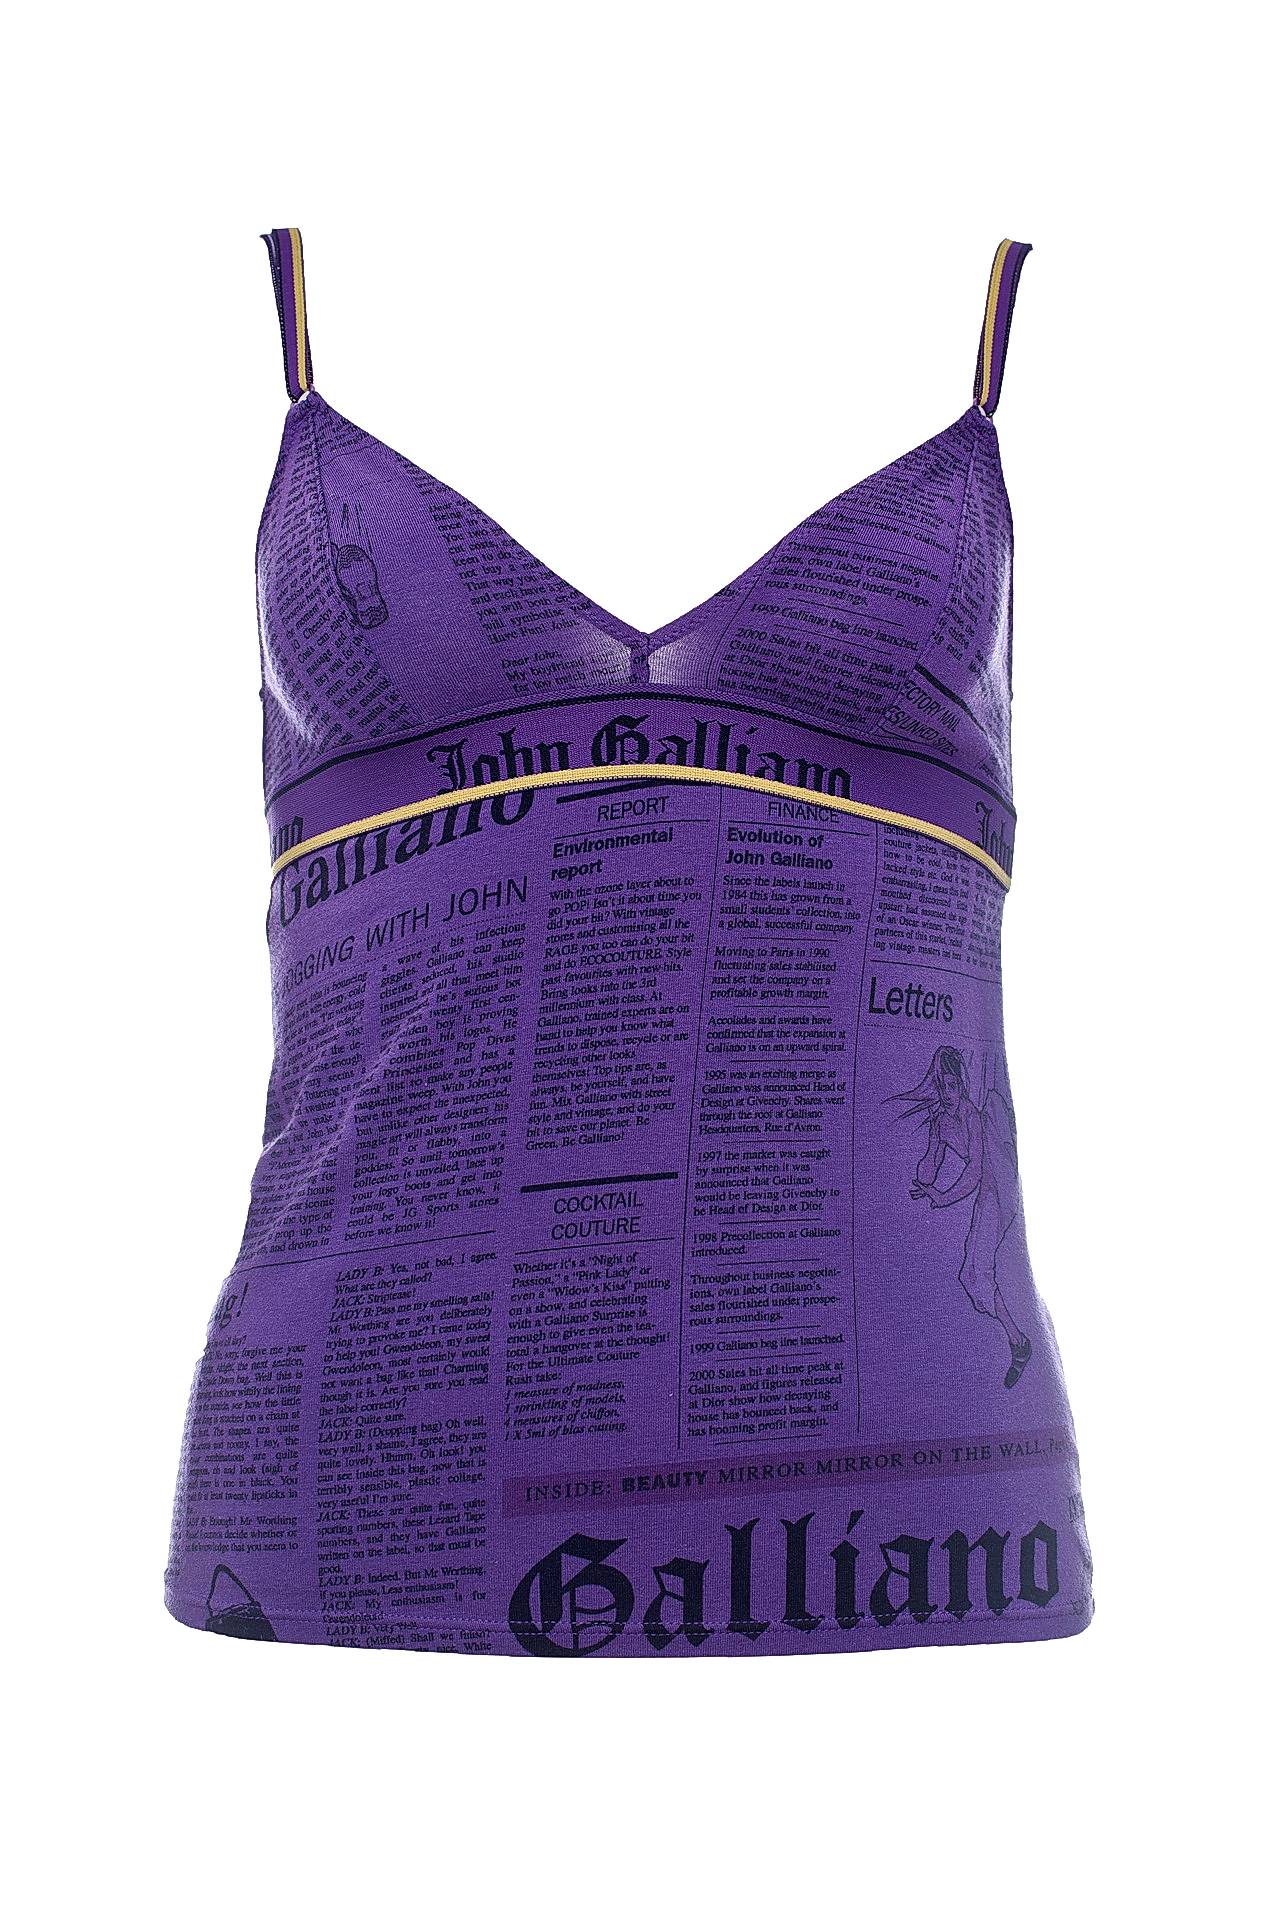 Одежда женская Топ JOHN GALLIANO (314G/18). Купить за 4450 руб.